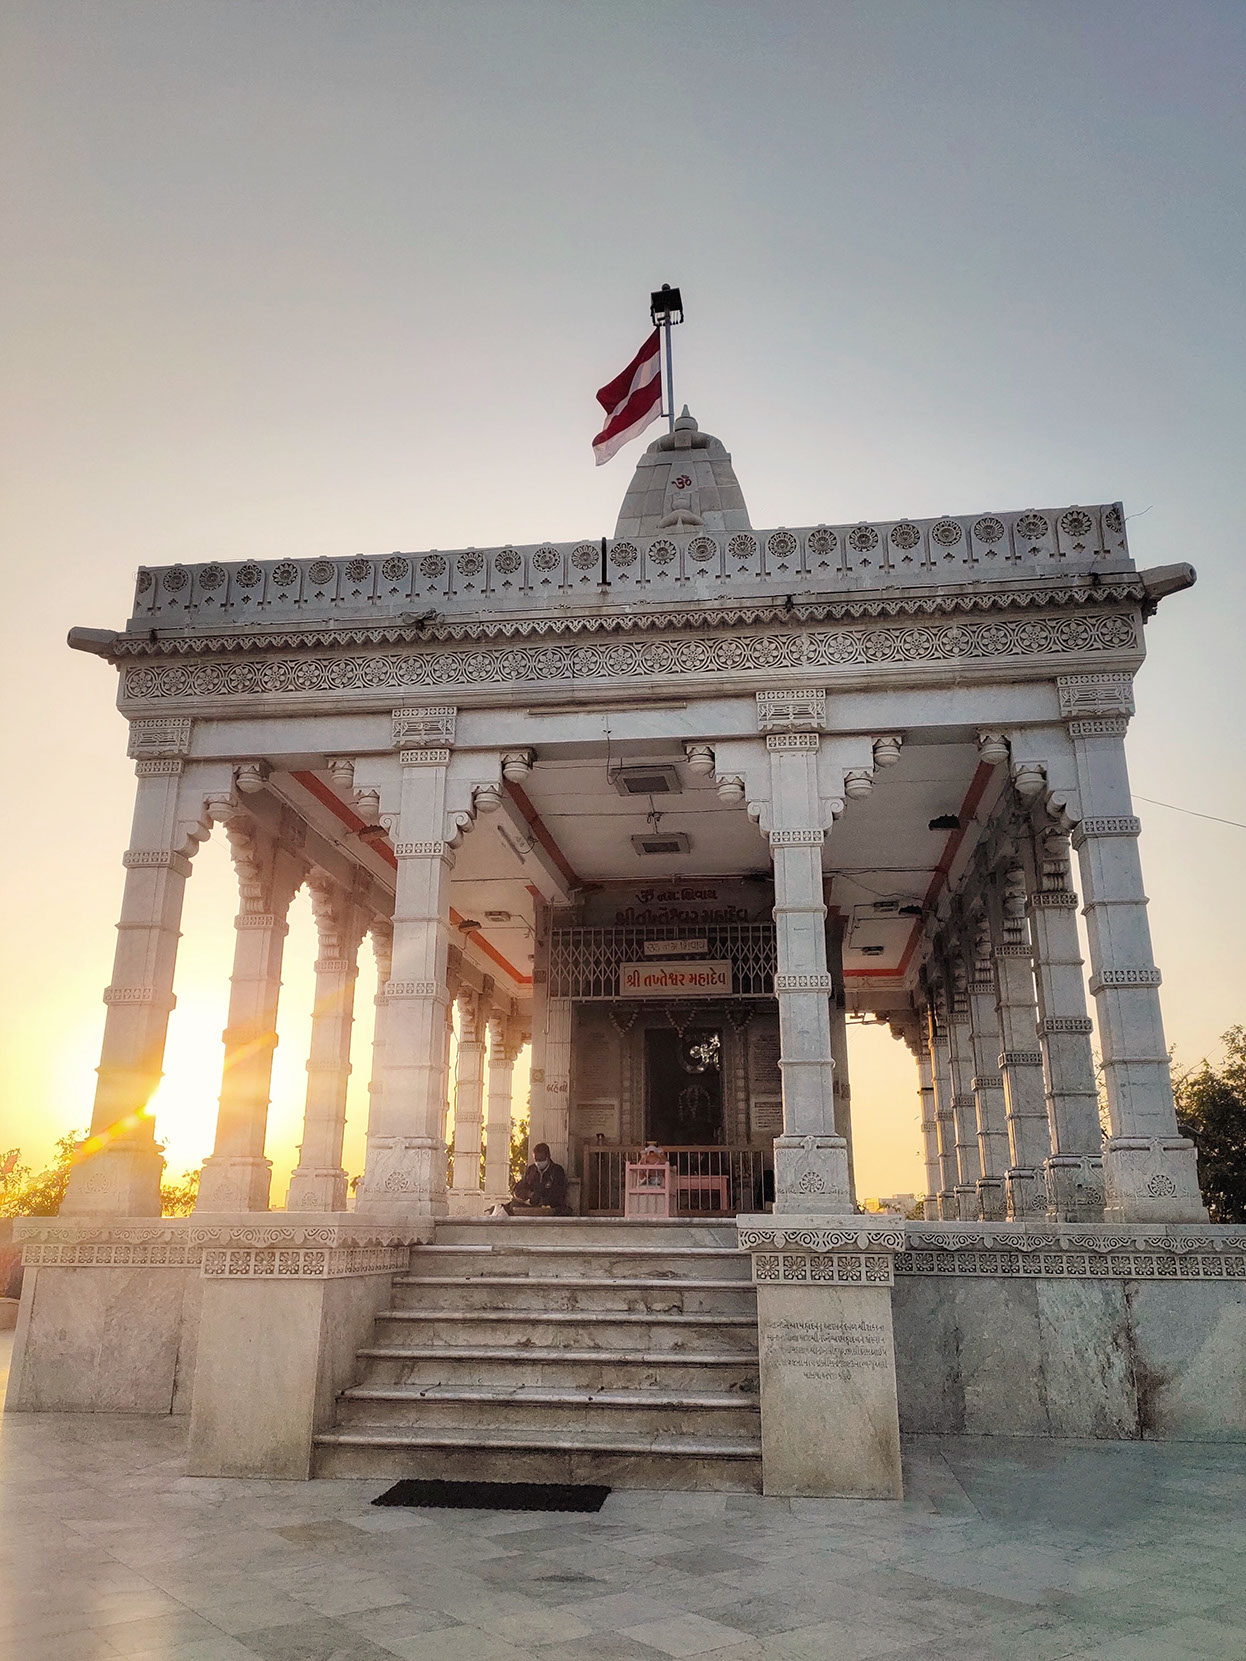 Takhteshwar temple in Bhavnagar